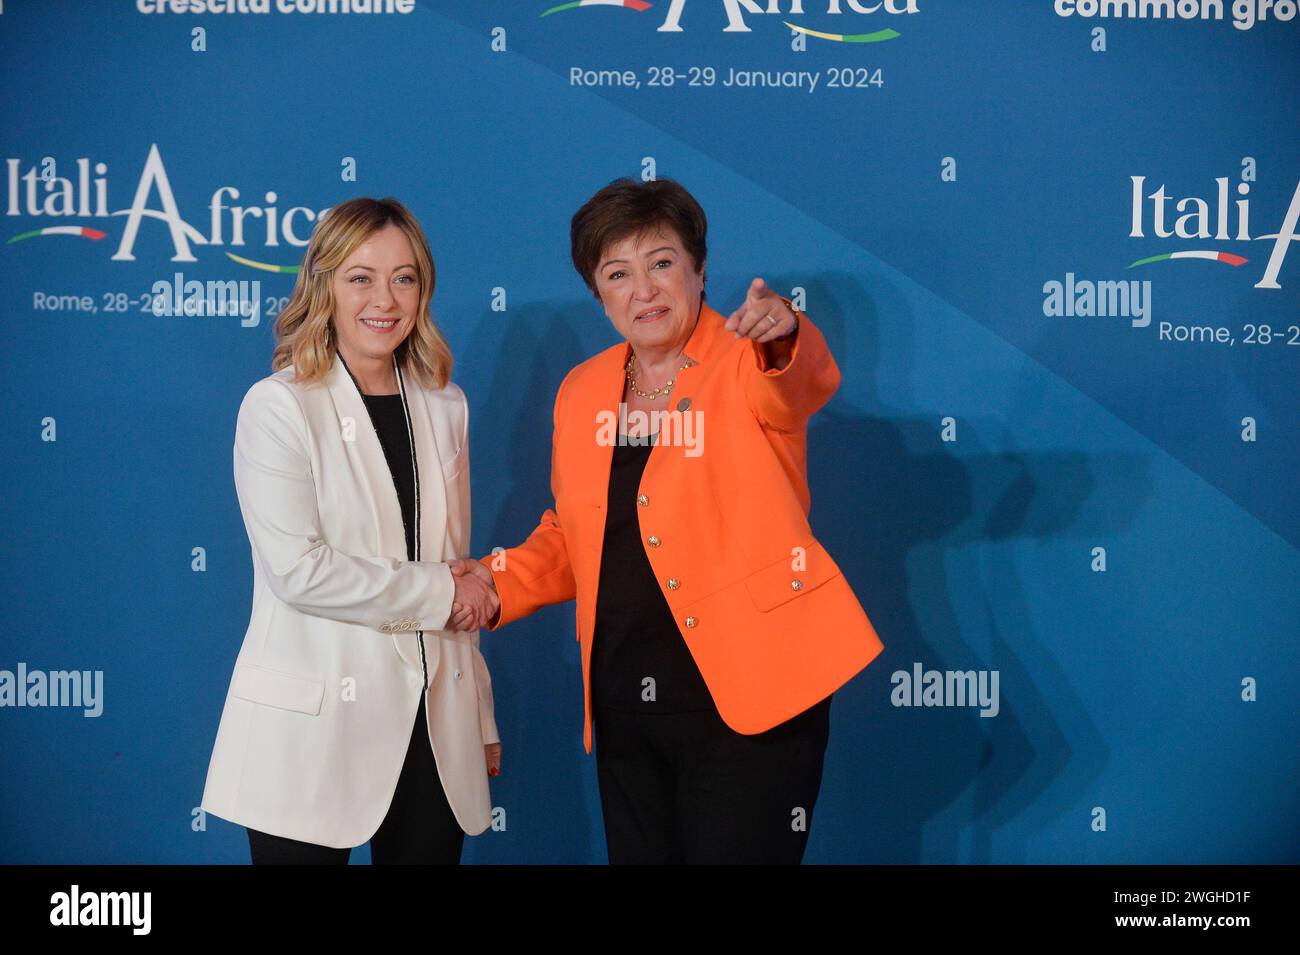 Italie, Rome, 29 janvier 2024 : Sommet Italie Afrique 'ItaliAfrica Un pont de croissance commune'. Sur la photo, le premier ministre italien Giorgia Meloni et Kristalina Banque D'Images